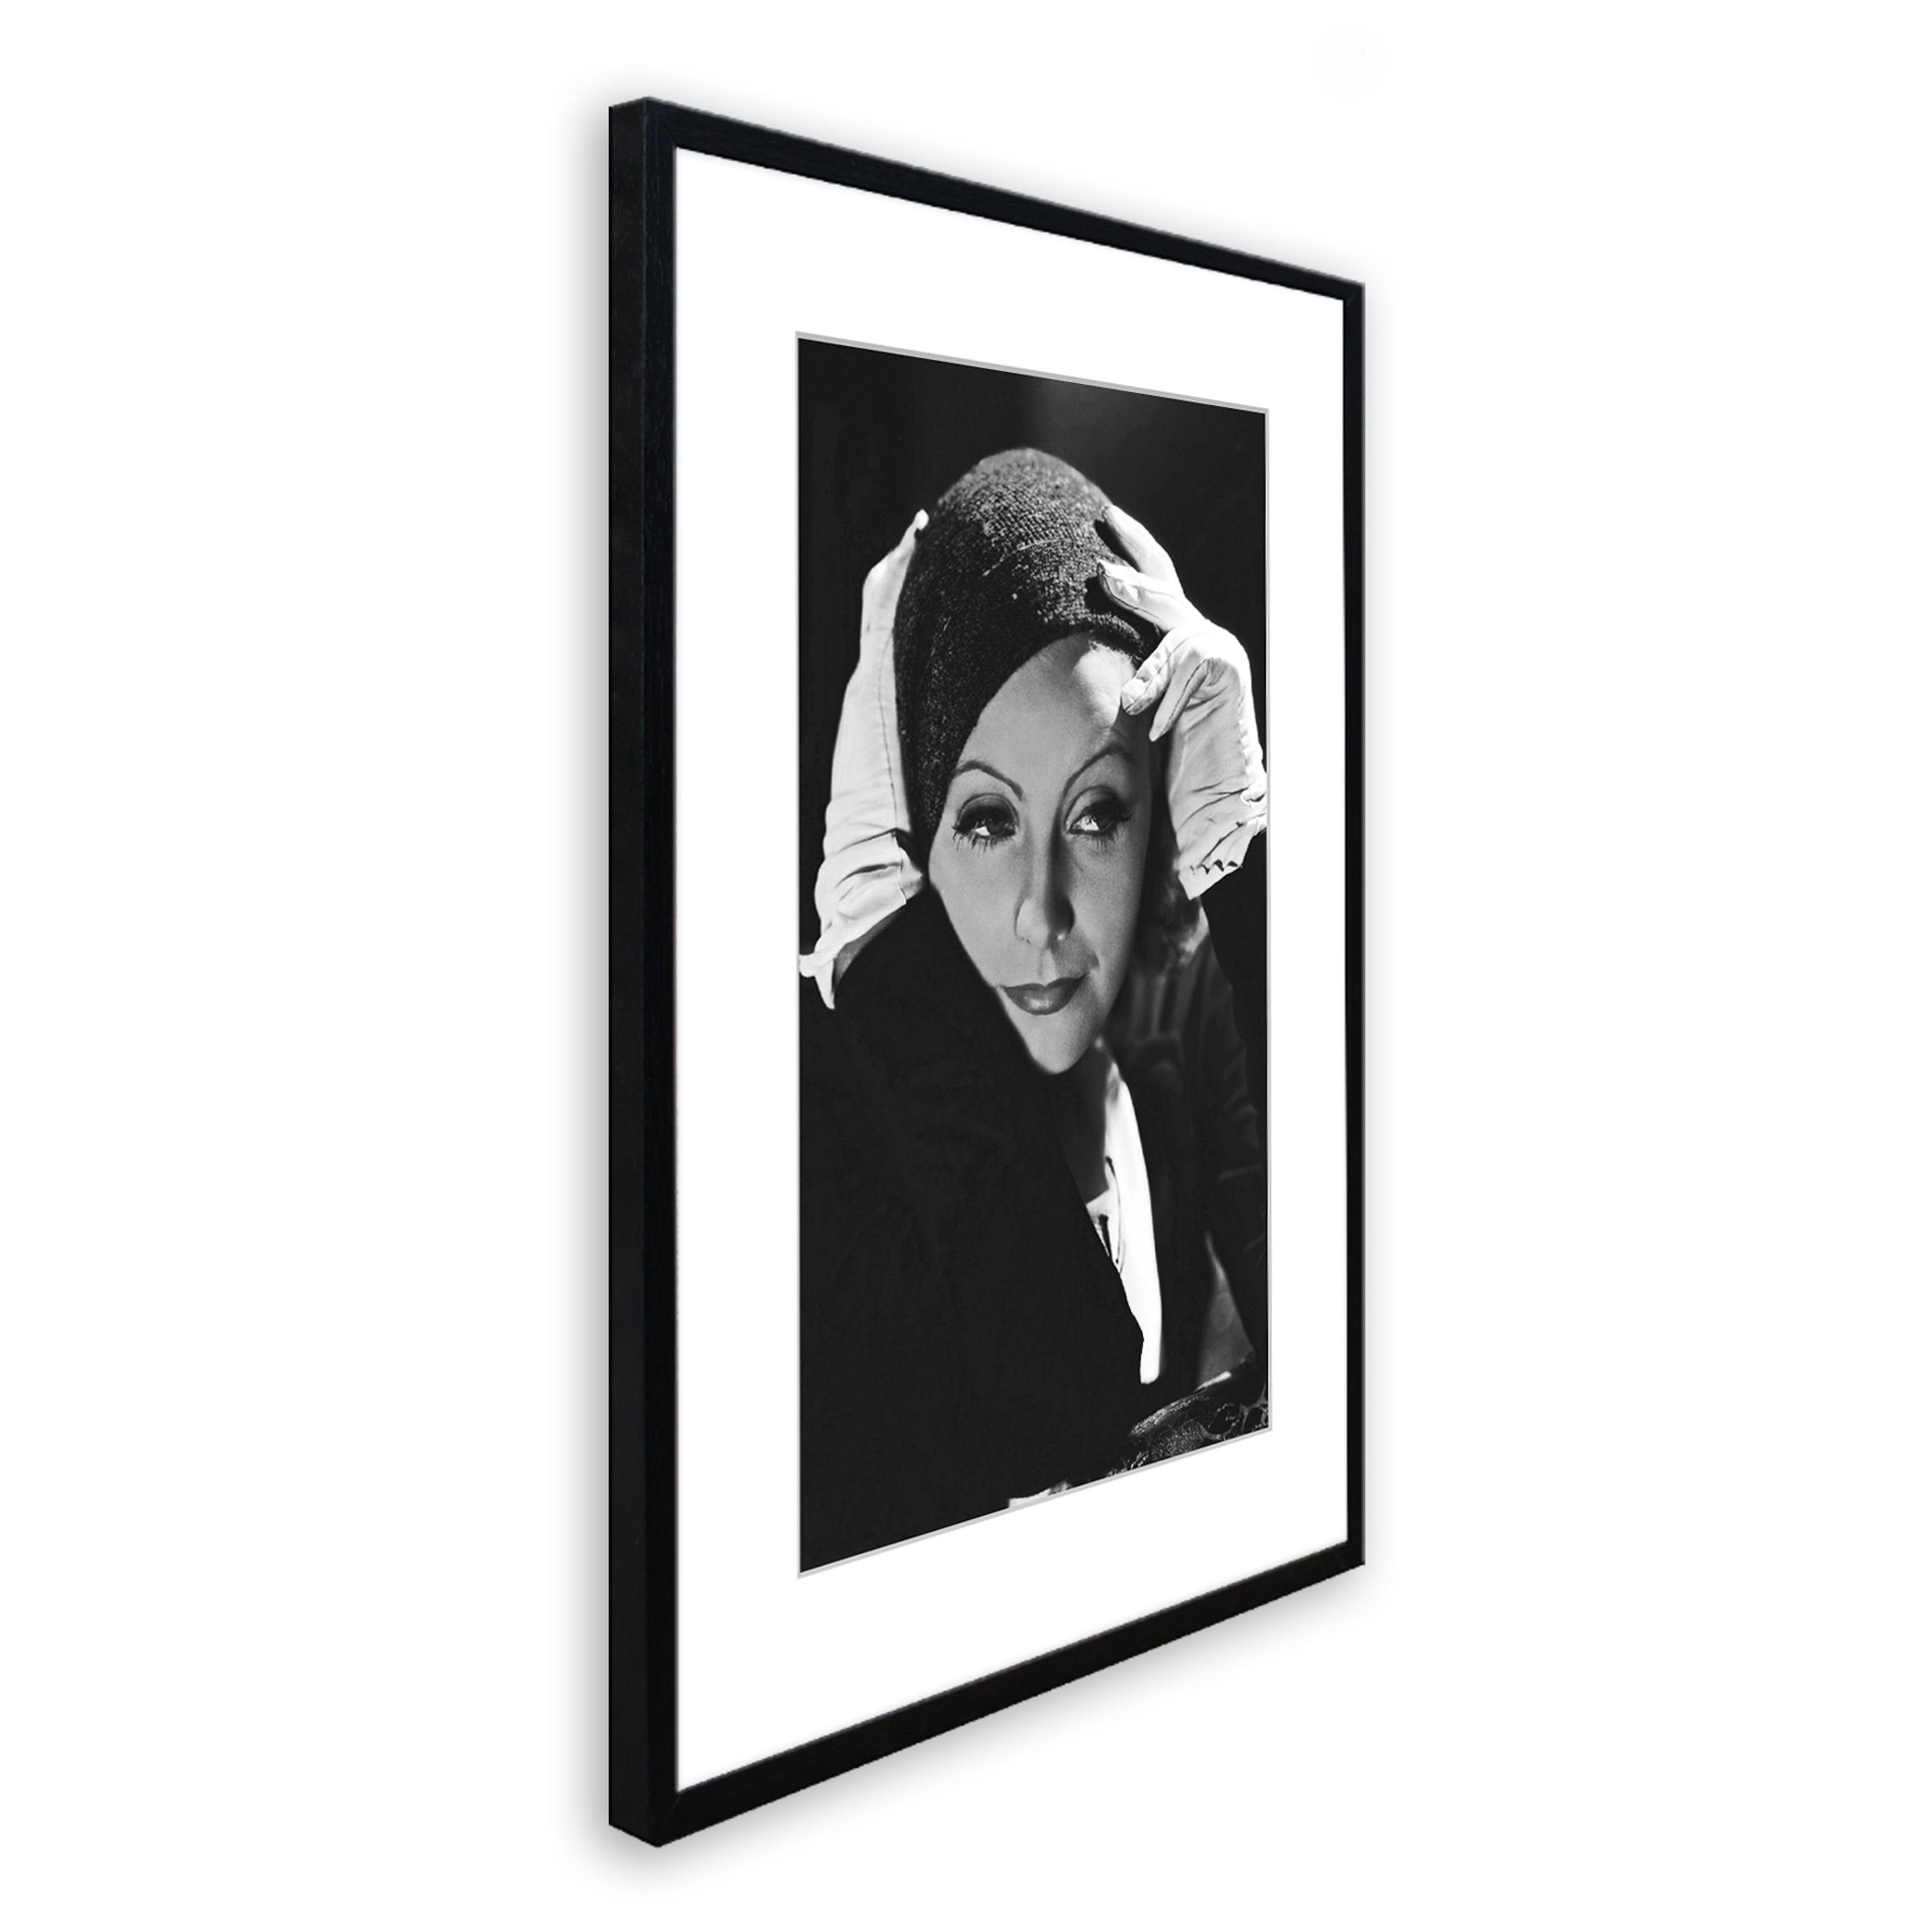 Garbo, schwarz-weiß Rahmen Bild Film-Star: Greta 51x71cm Greta / artissimo Bild gerahmt / Poster mit Garbo Rahmen mit